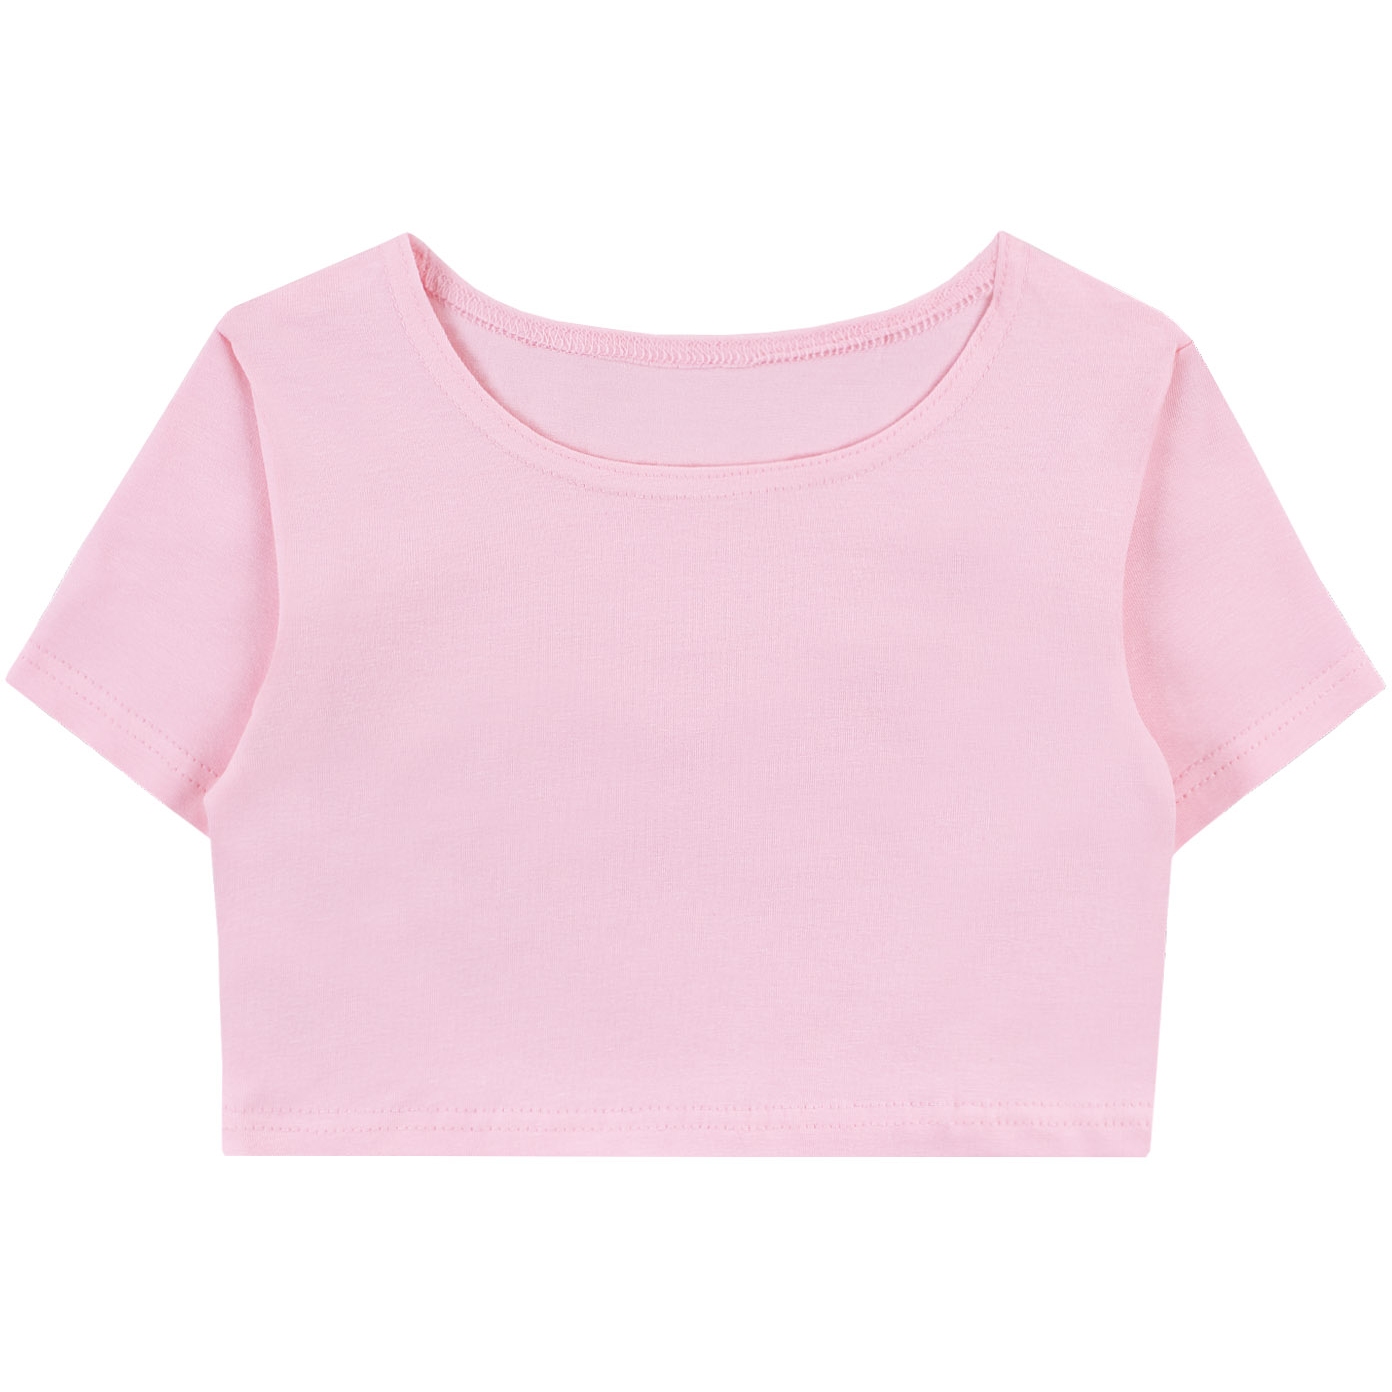 Топ (футболка) 110-116 Розовый (64) 1431100115